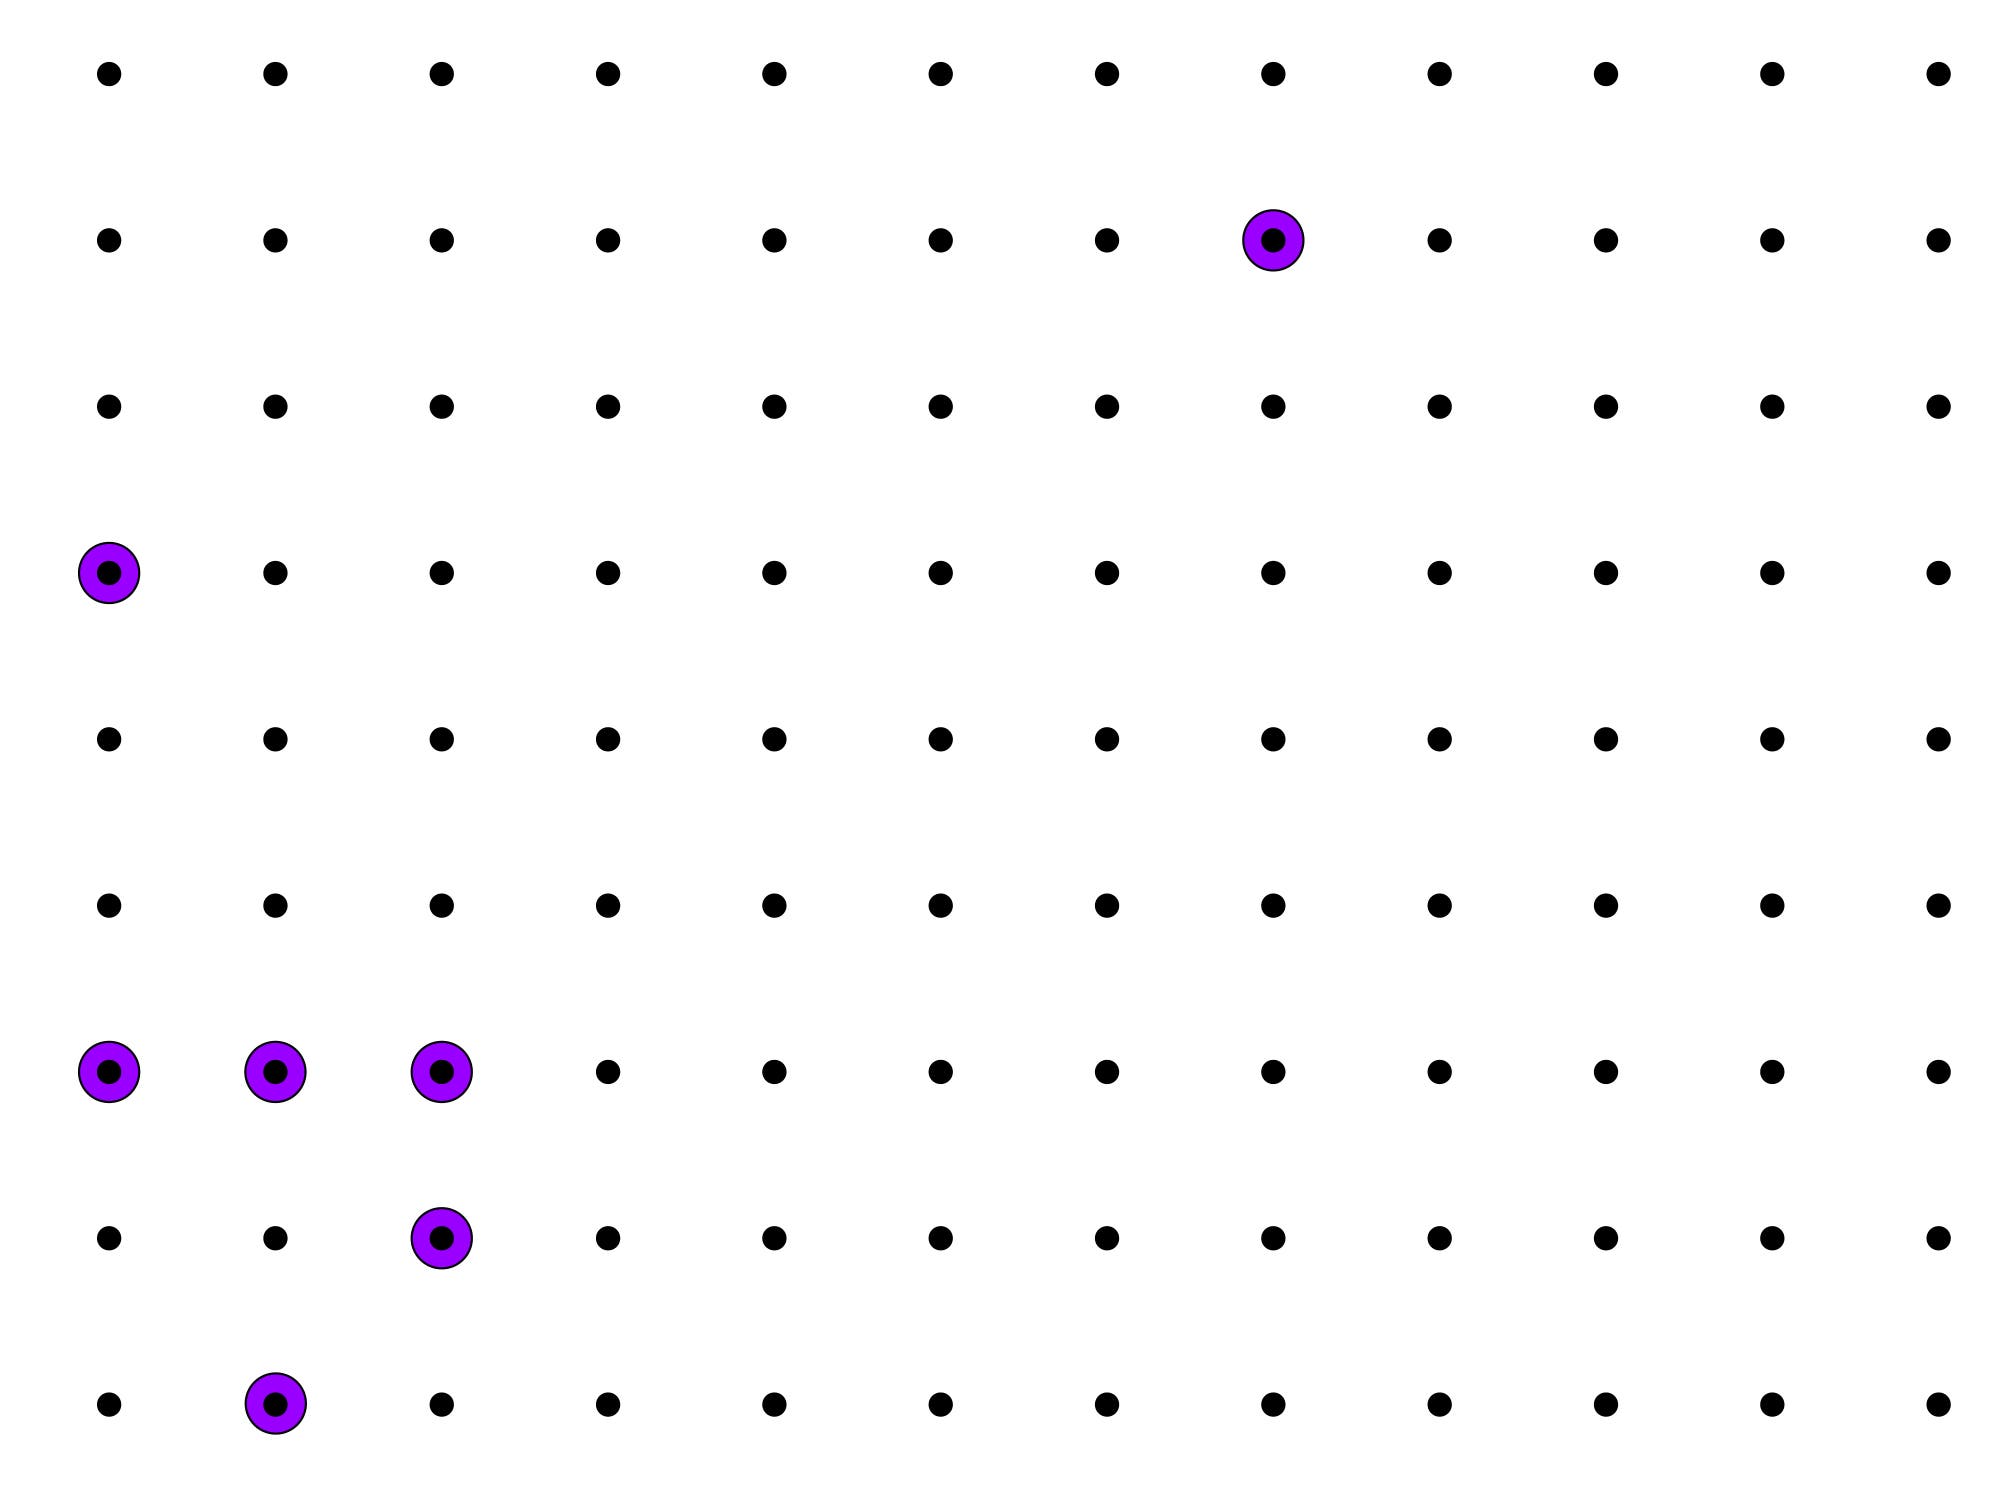 In einem quadratischen Gitter angeordnete Punkte, manche sind lila markiert